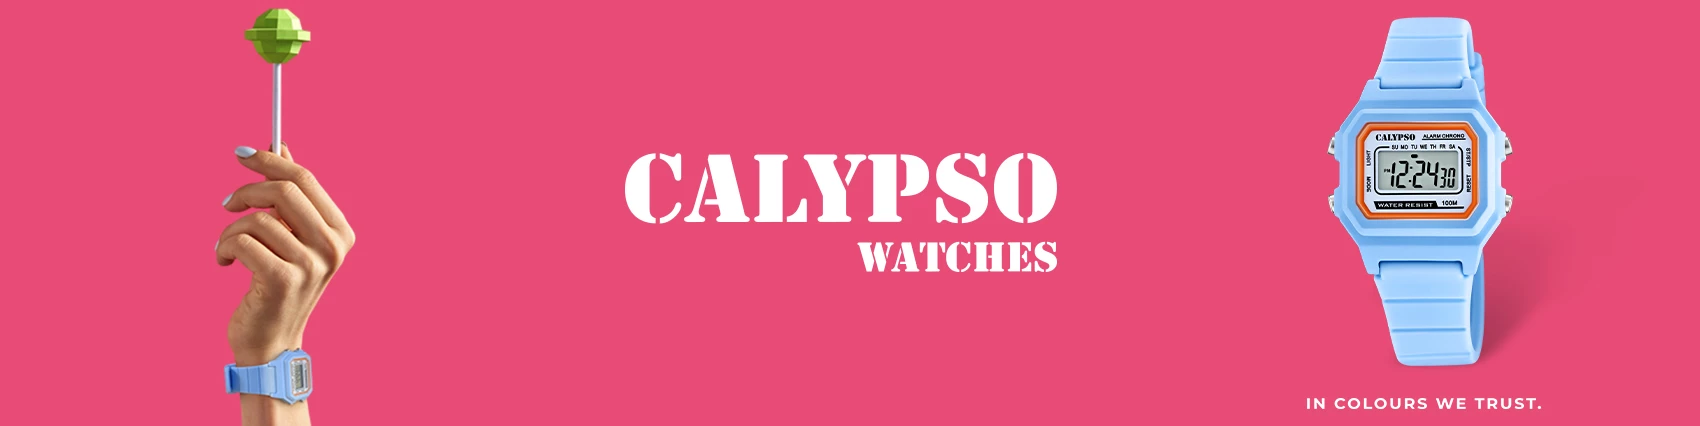 Calypso femme